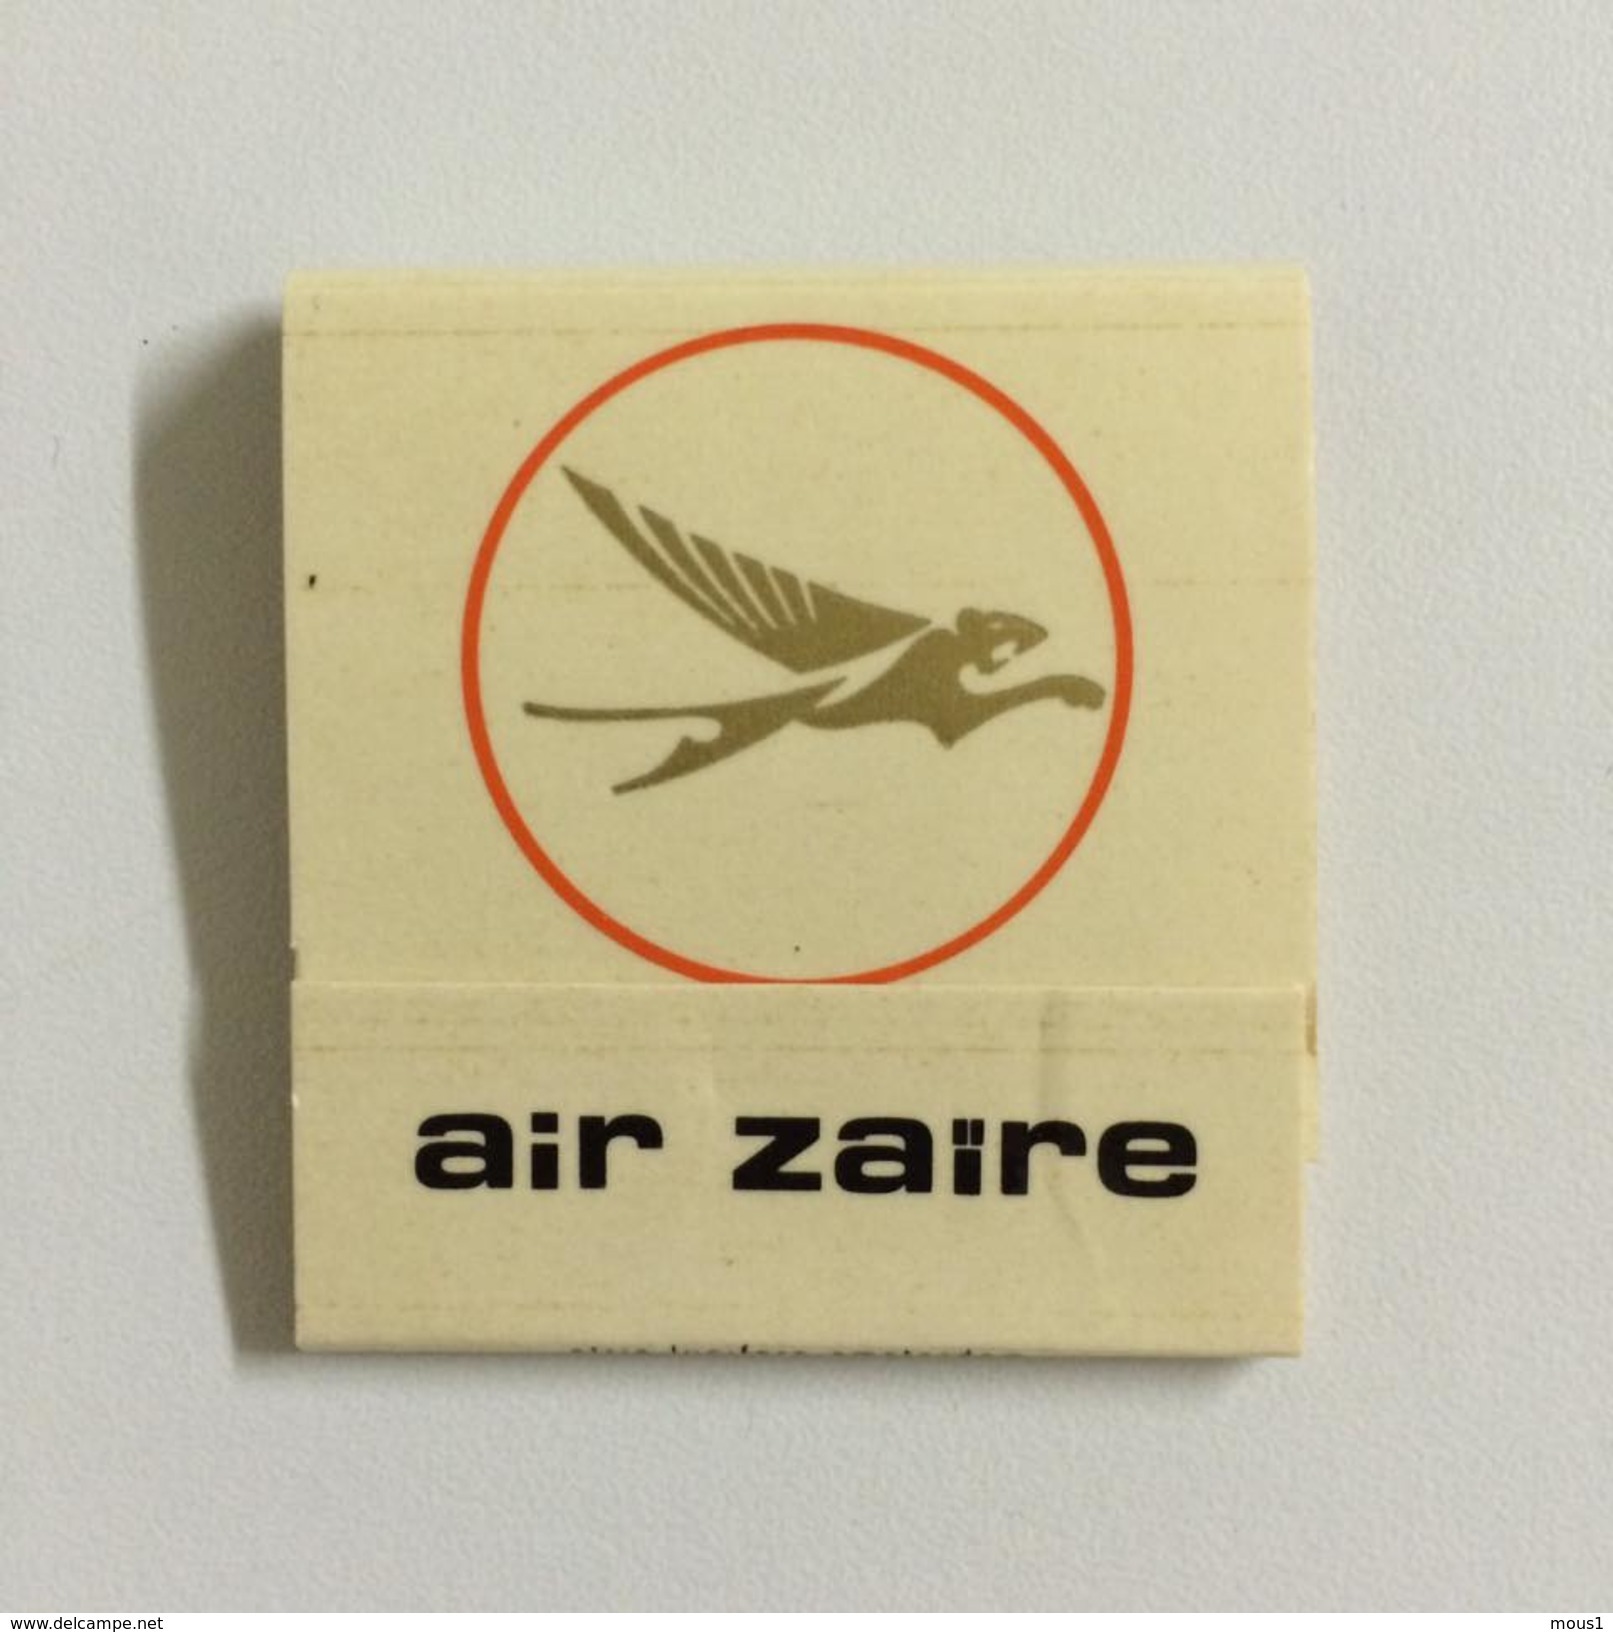 AIR ZAIRE: Une Pochette D'allumettes Neuve.  Matches Airline Company. - Matchboxes